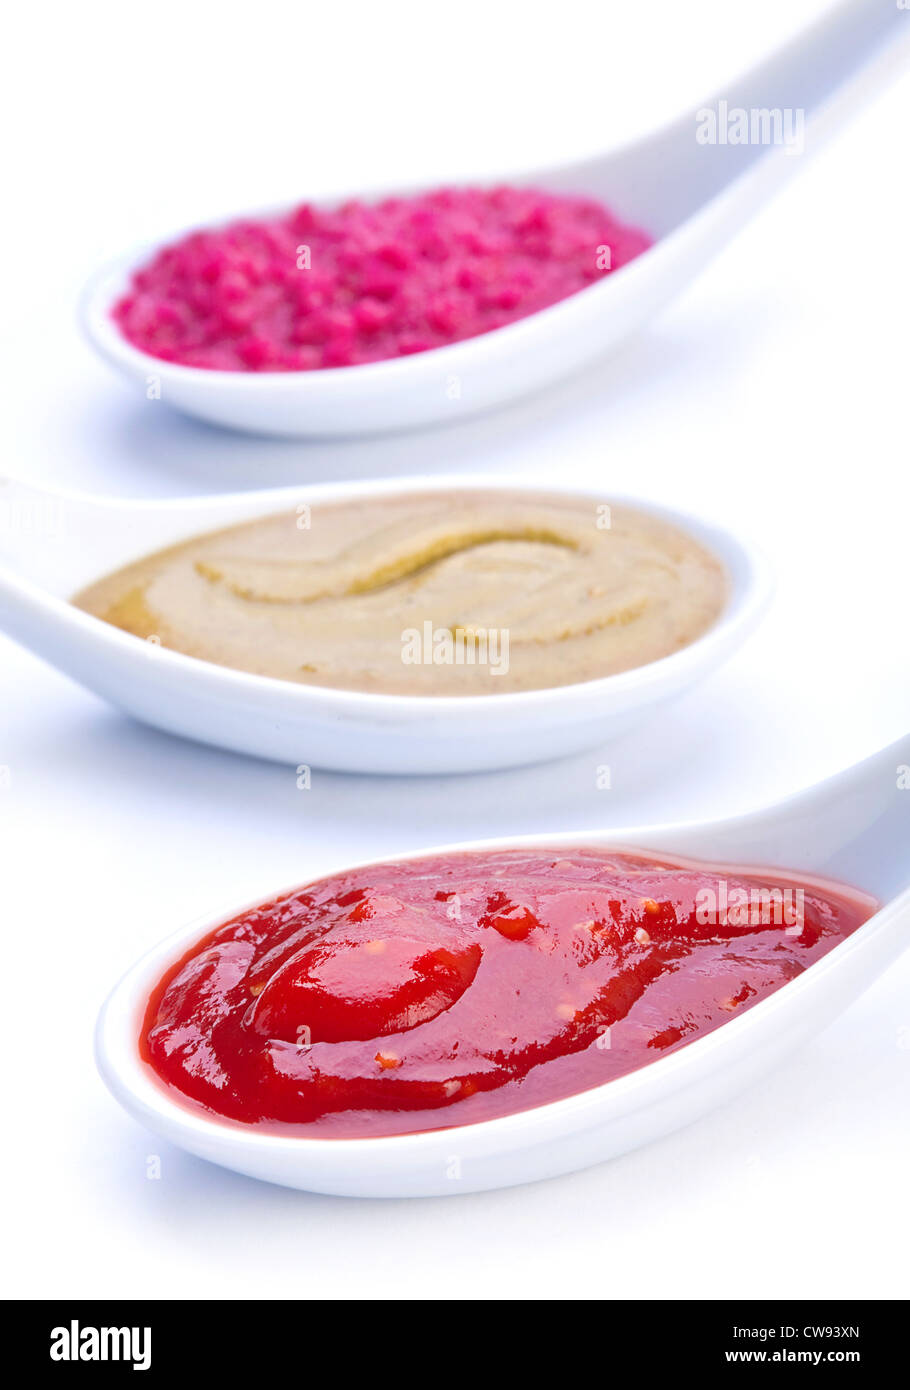 En salsa de cuchara de cerámica en blanco Foto de stock